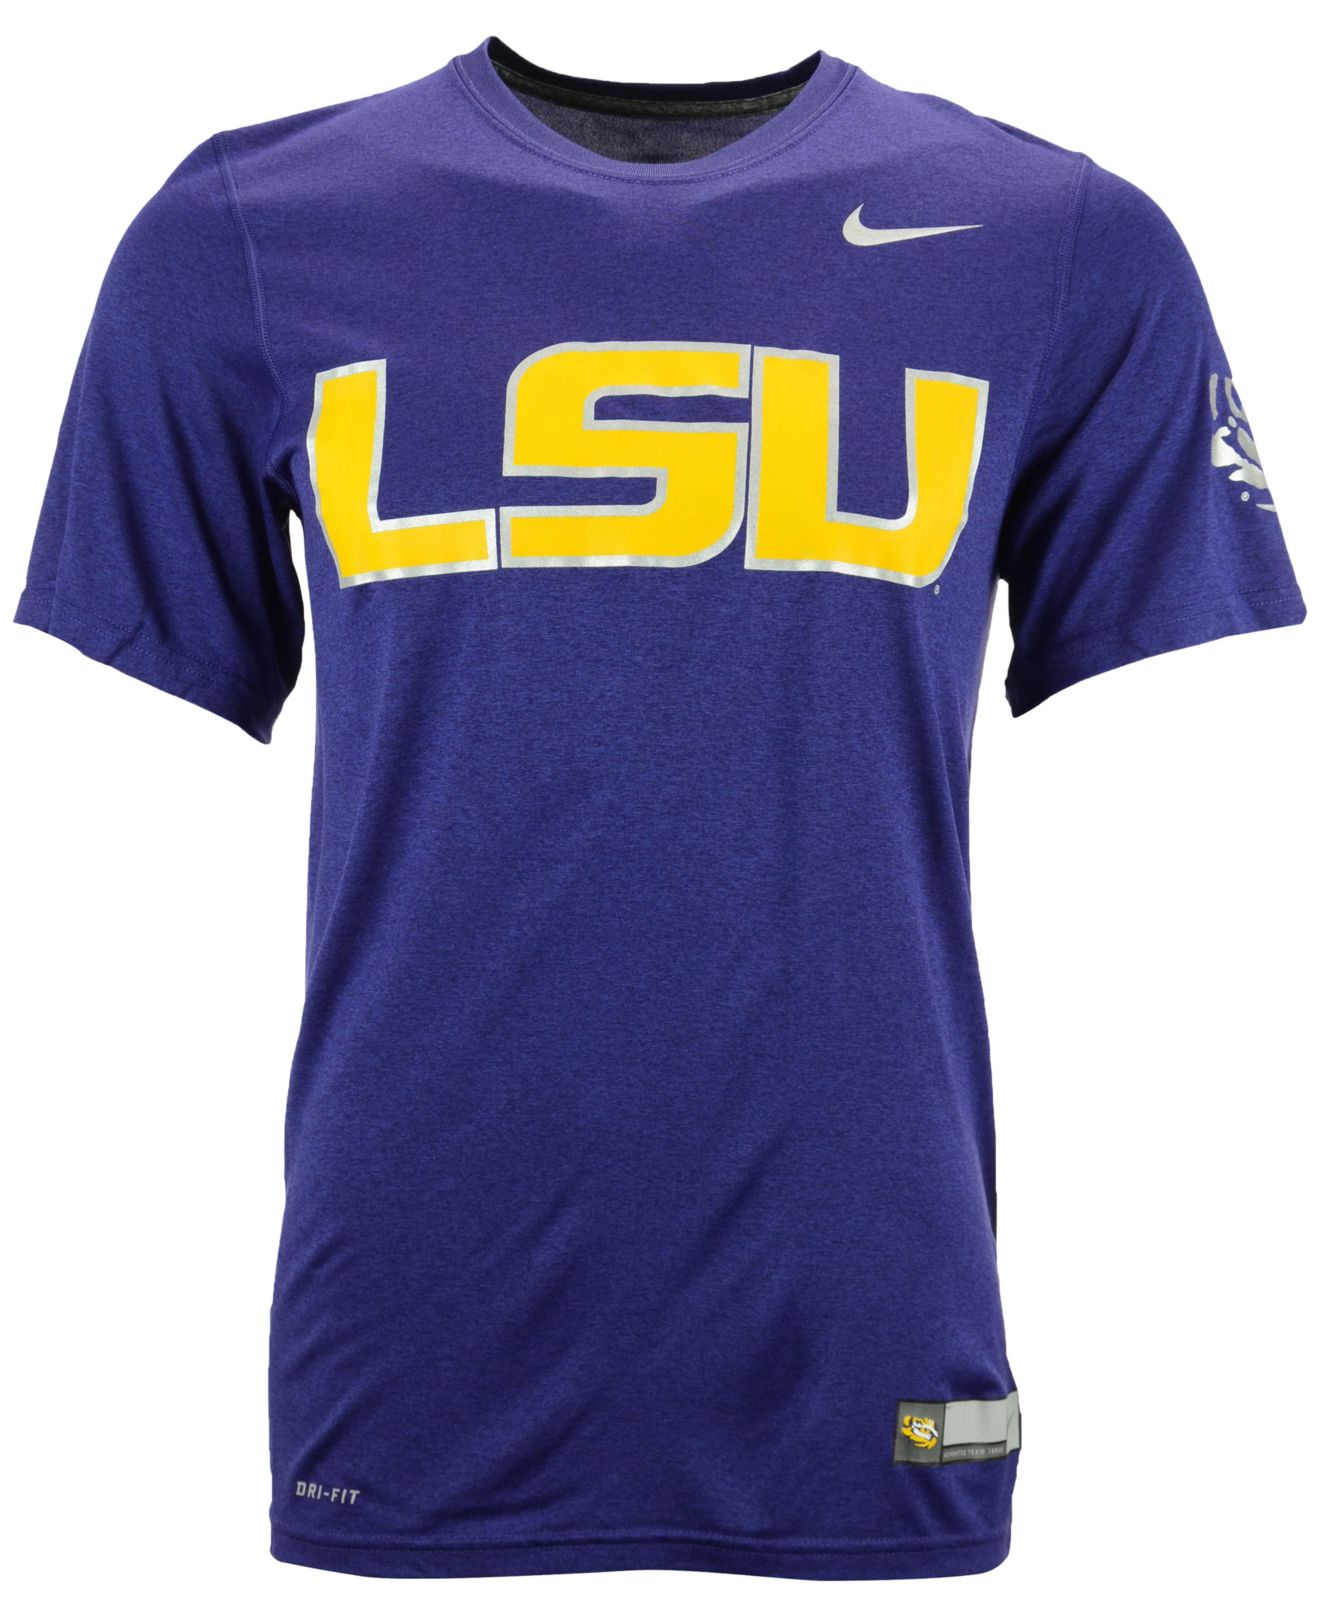 Lyst - Nike Men's Lsu Tigers Dri-fit Sideline Ii T-shirt in Purple for Men